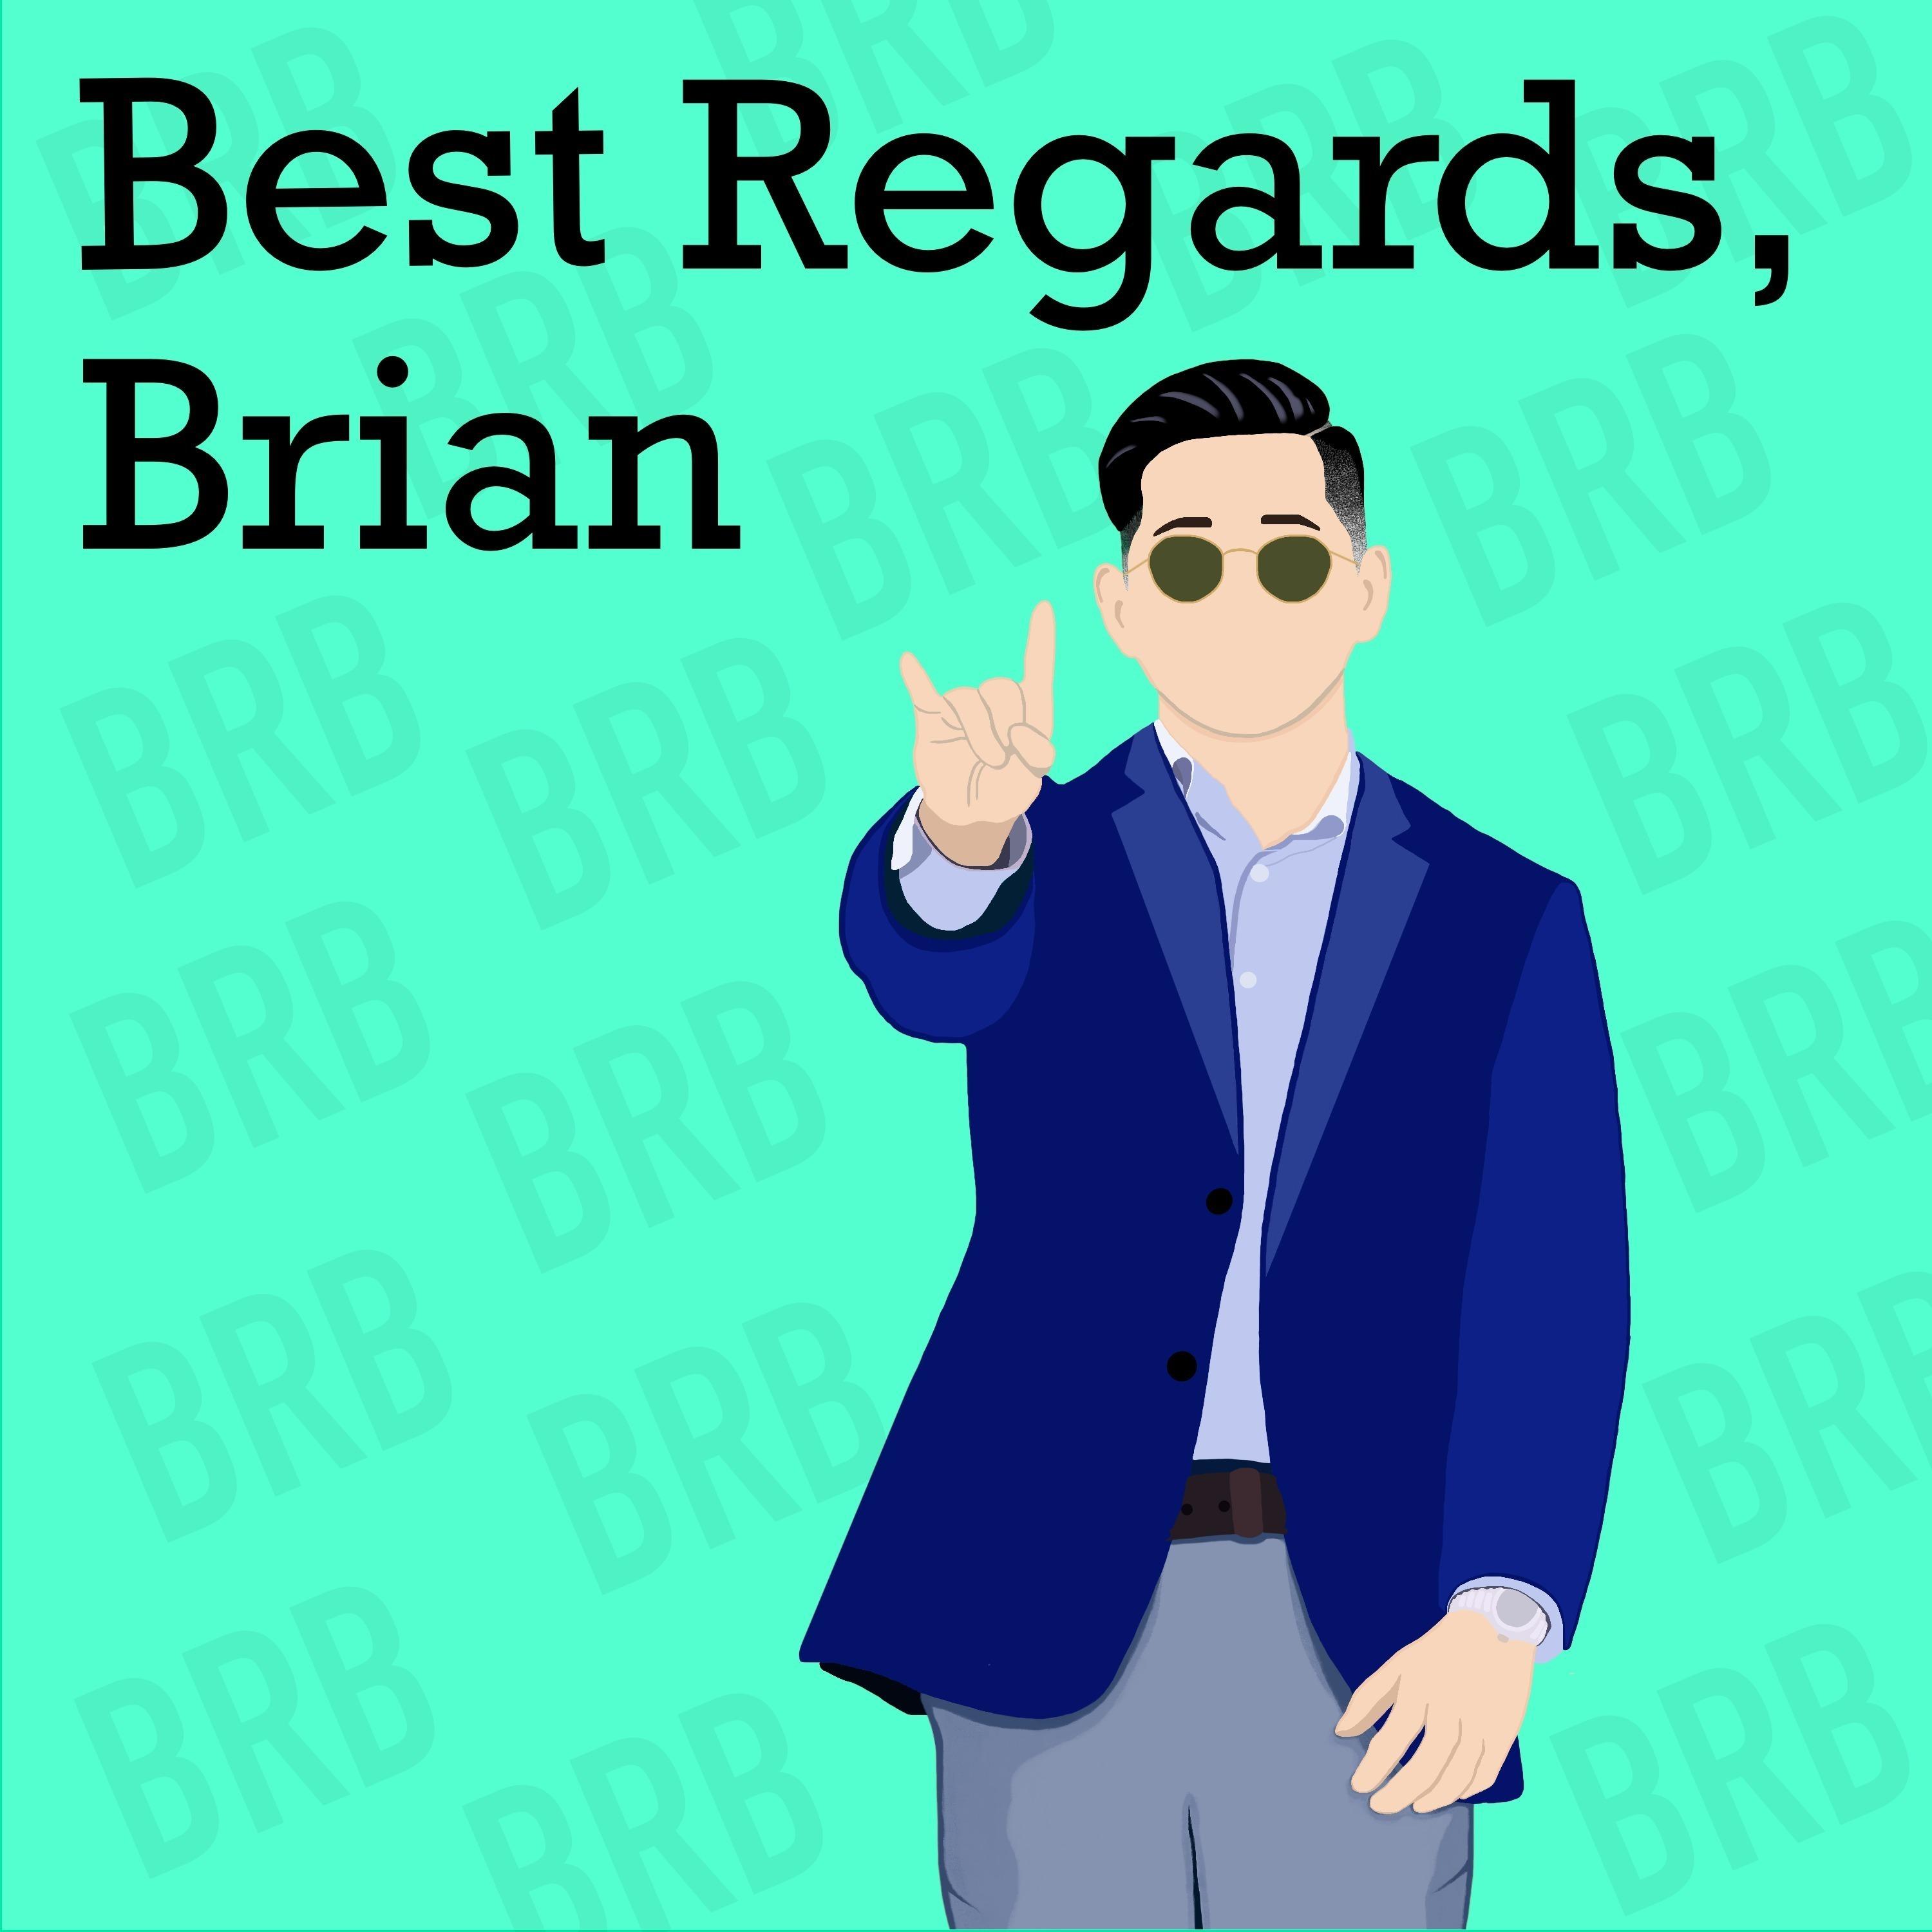 Best Regards, Brian